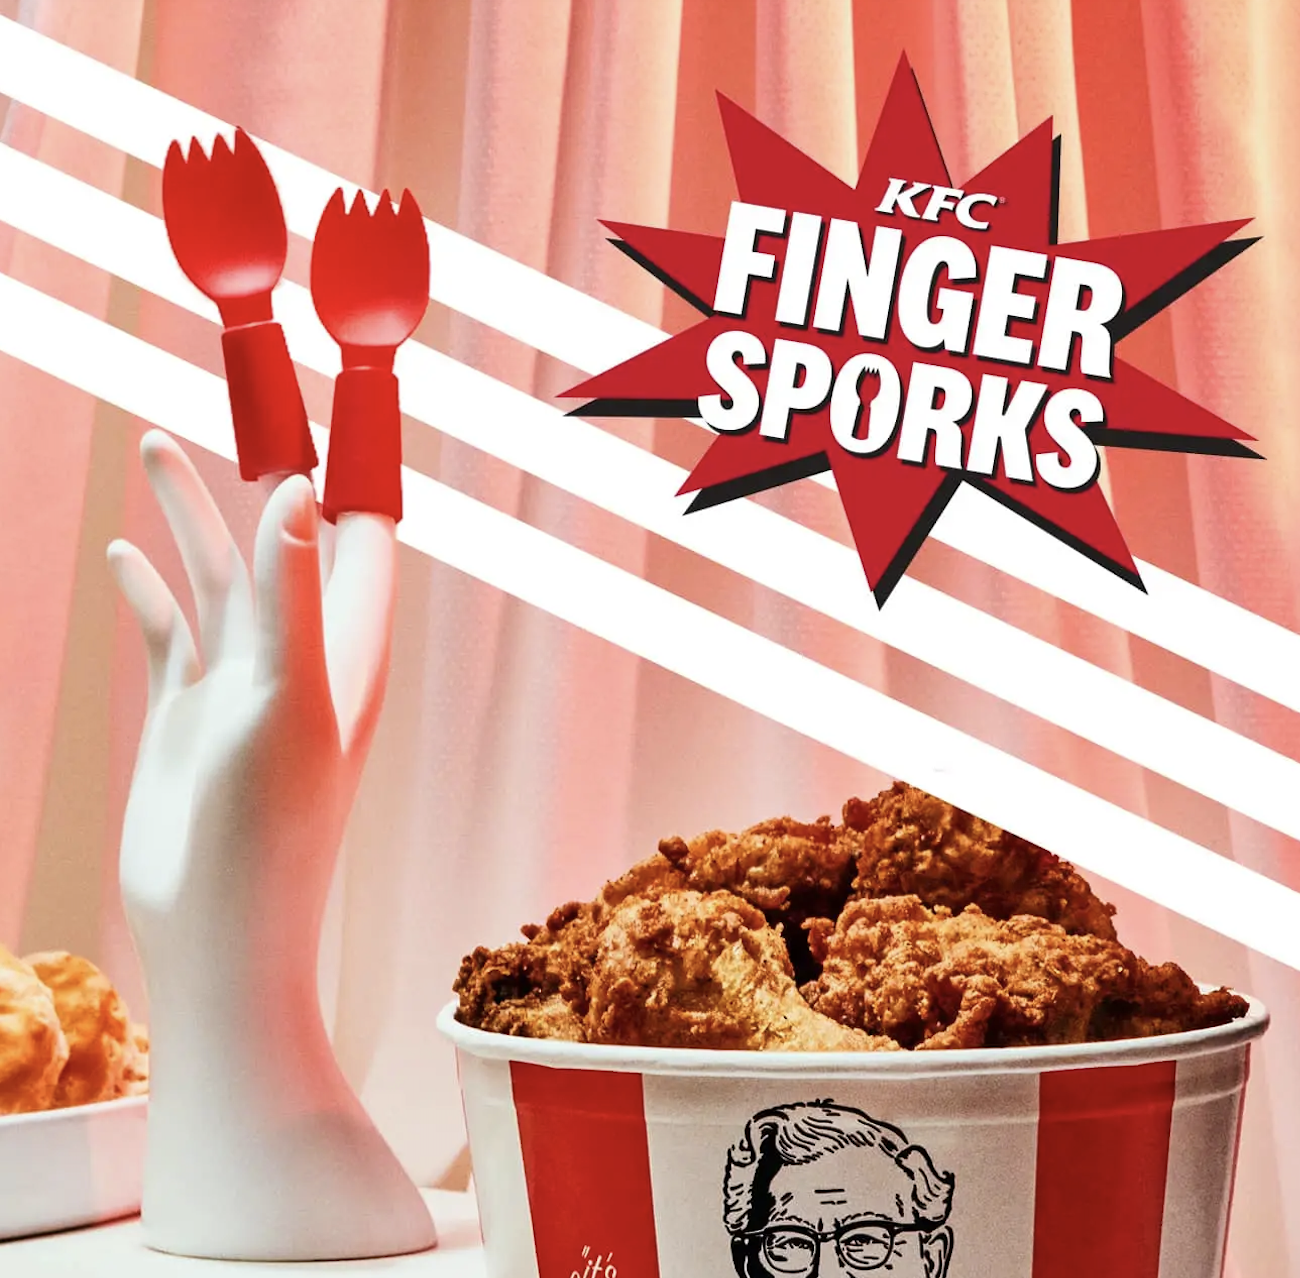 KFC FINGER SPORKS